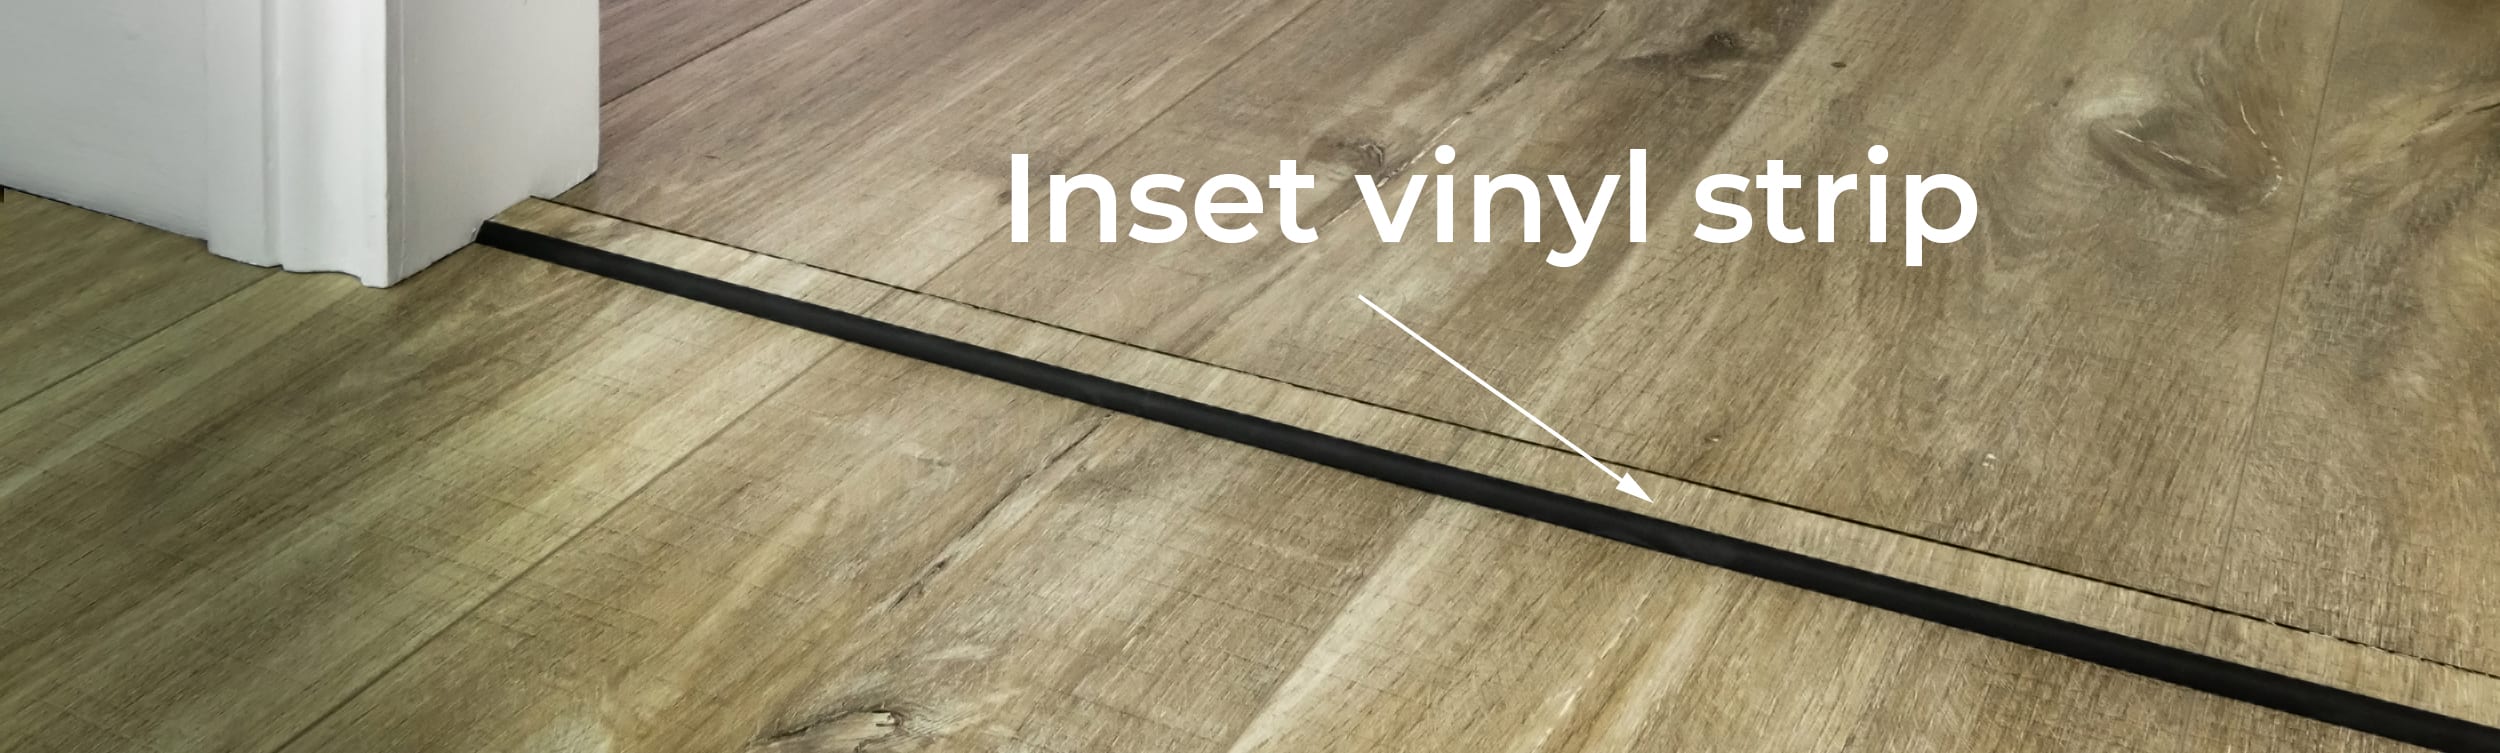 Transition Strips For Vinyl Flooring, Floor Transition Strips Tile To Vinyl